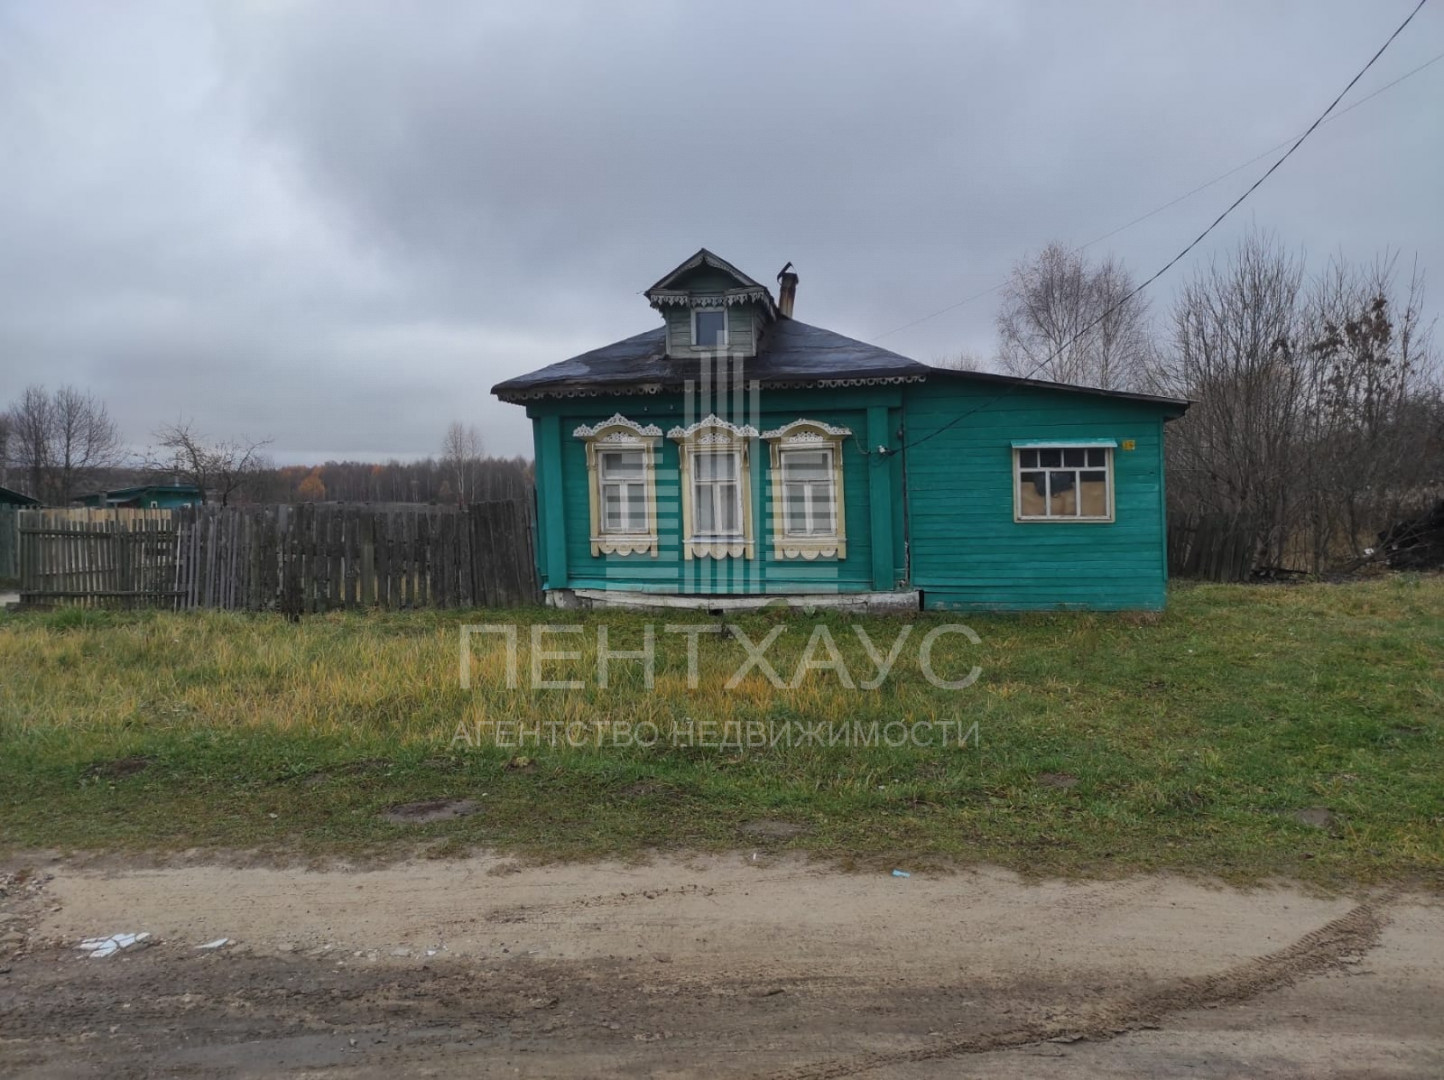 Новоселка д., Новоселка д., 26, дом деревянный с участком 22 сотка на продажу